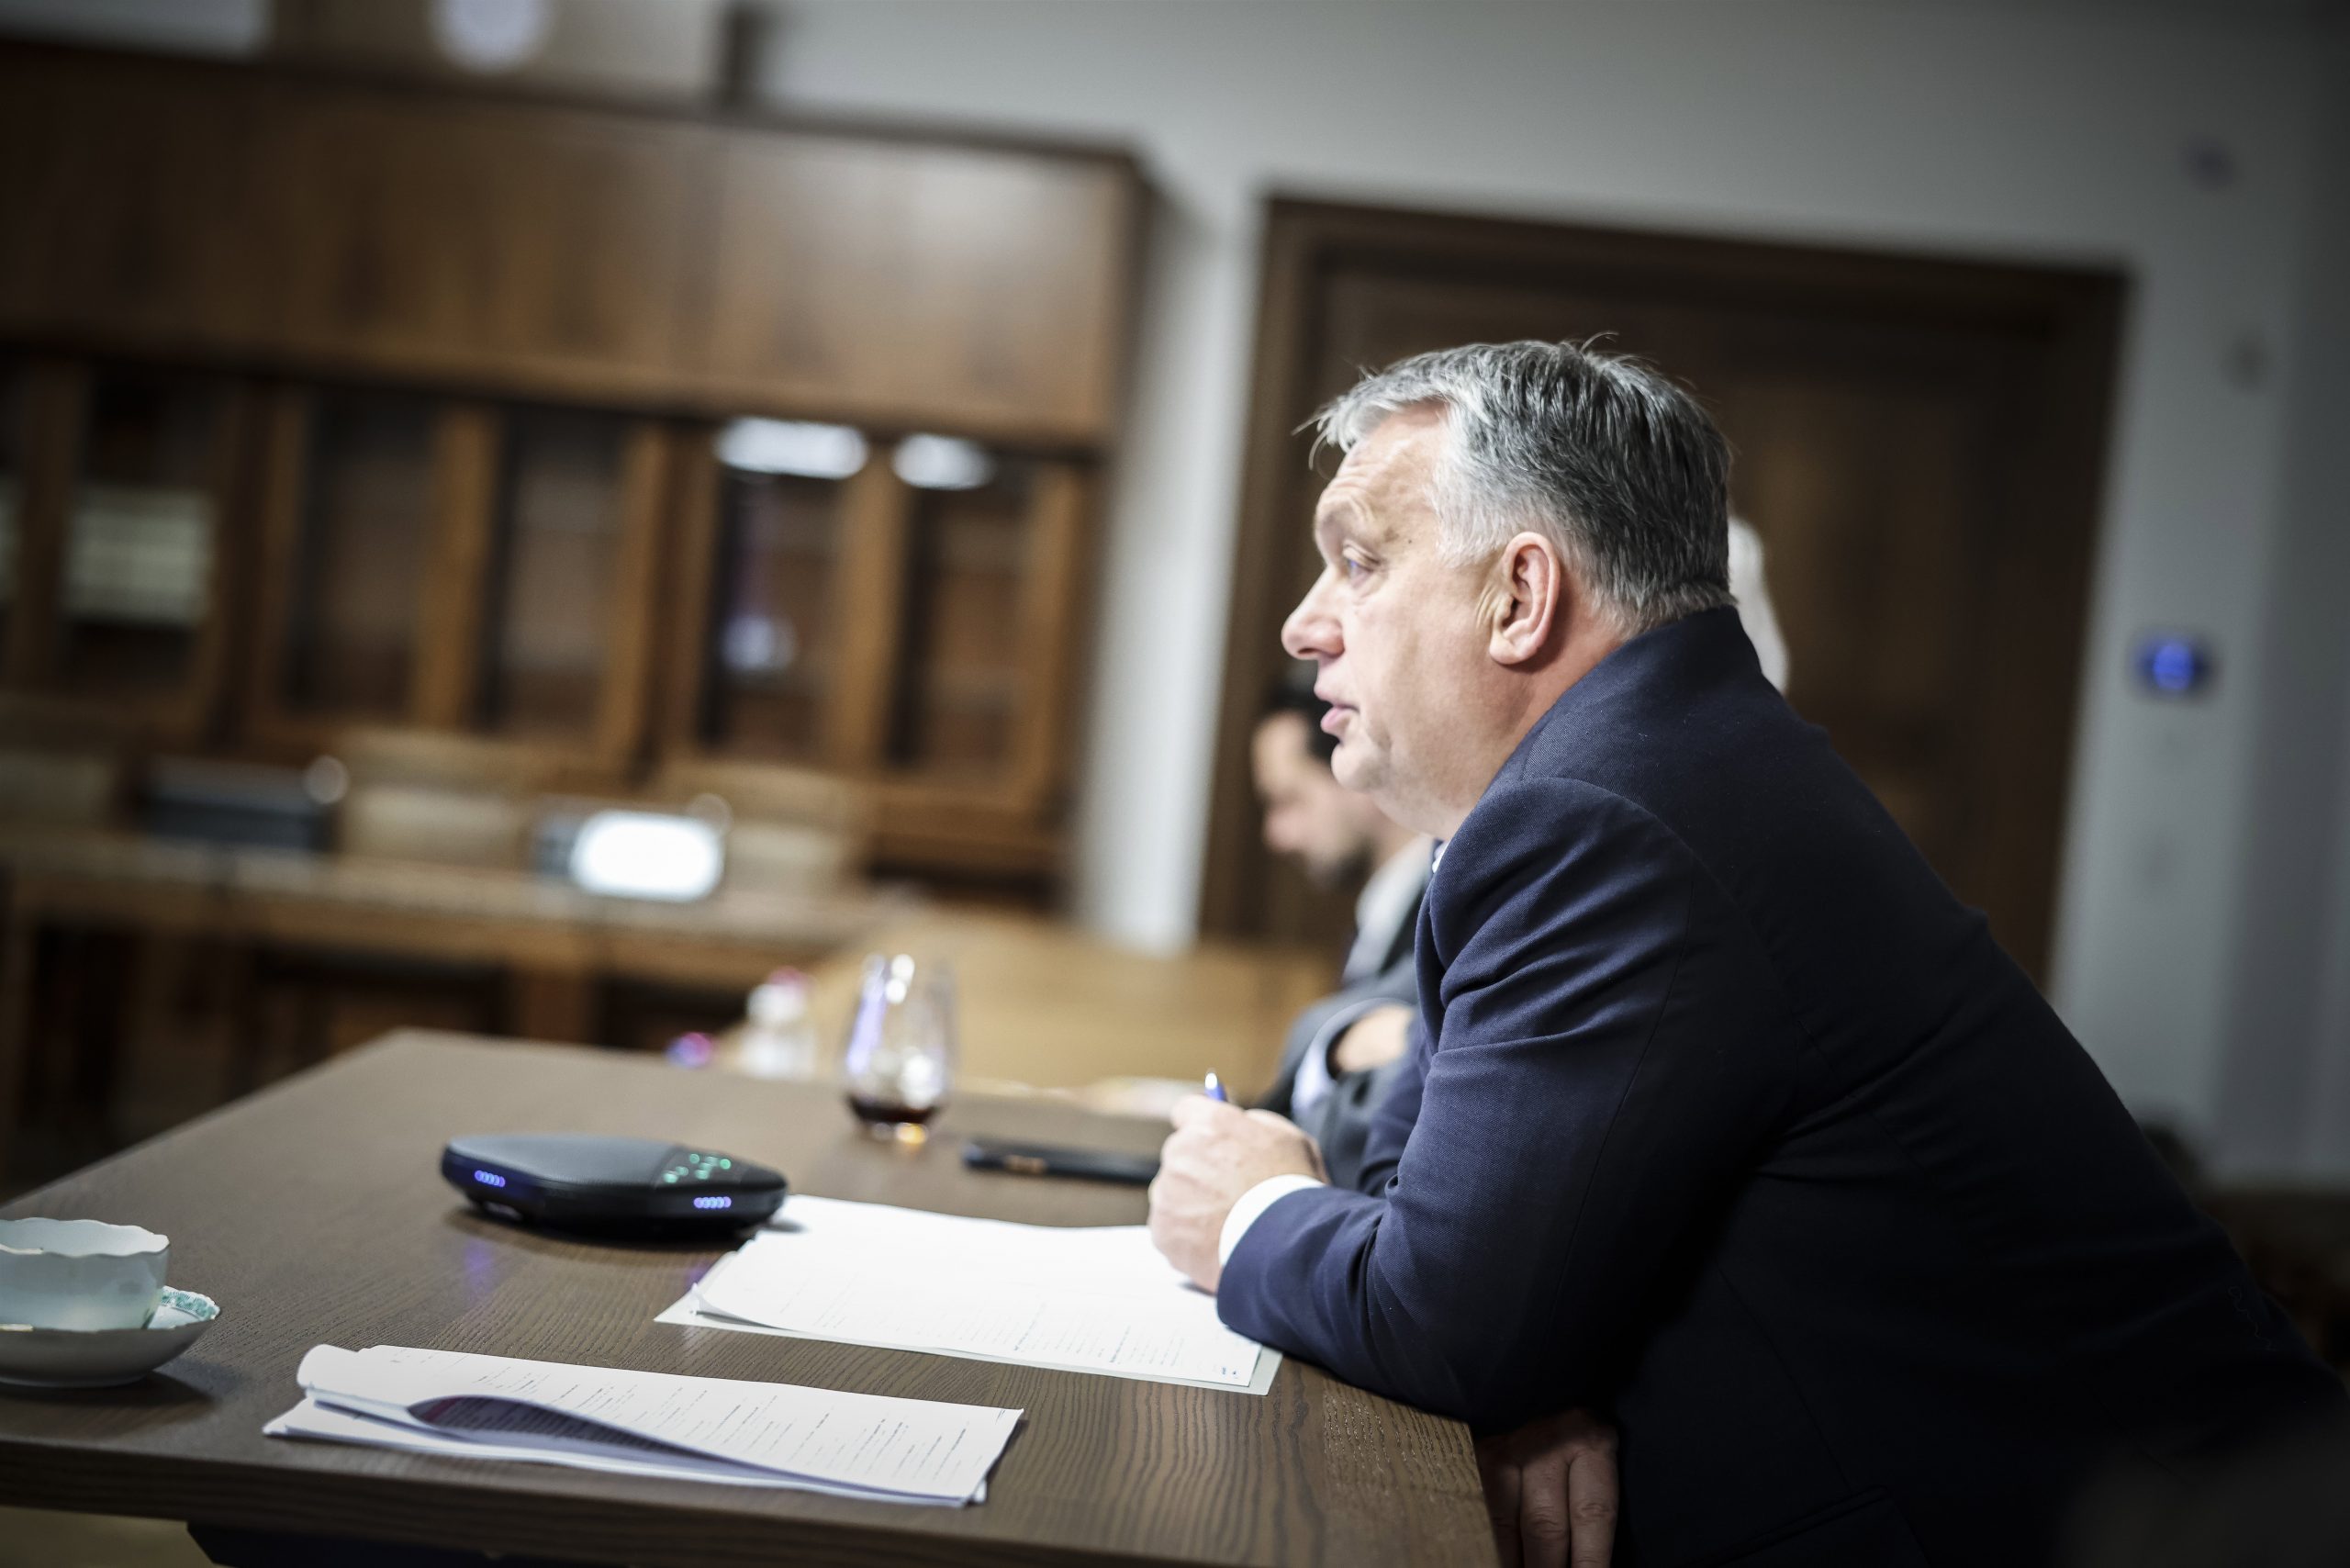 Viktor Orbán sprach auf der Vorstandssitzung der Christlich-Demokratischen Internationale